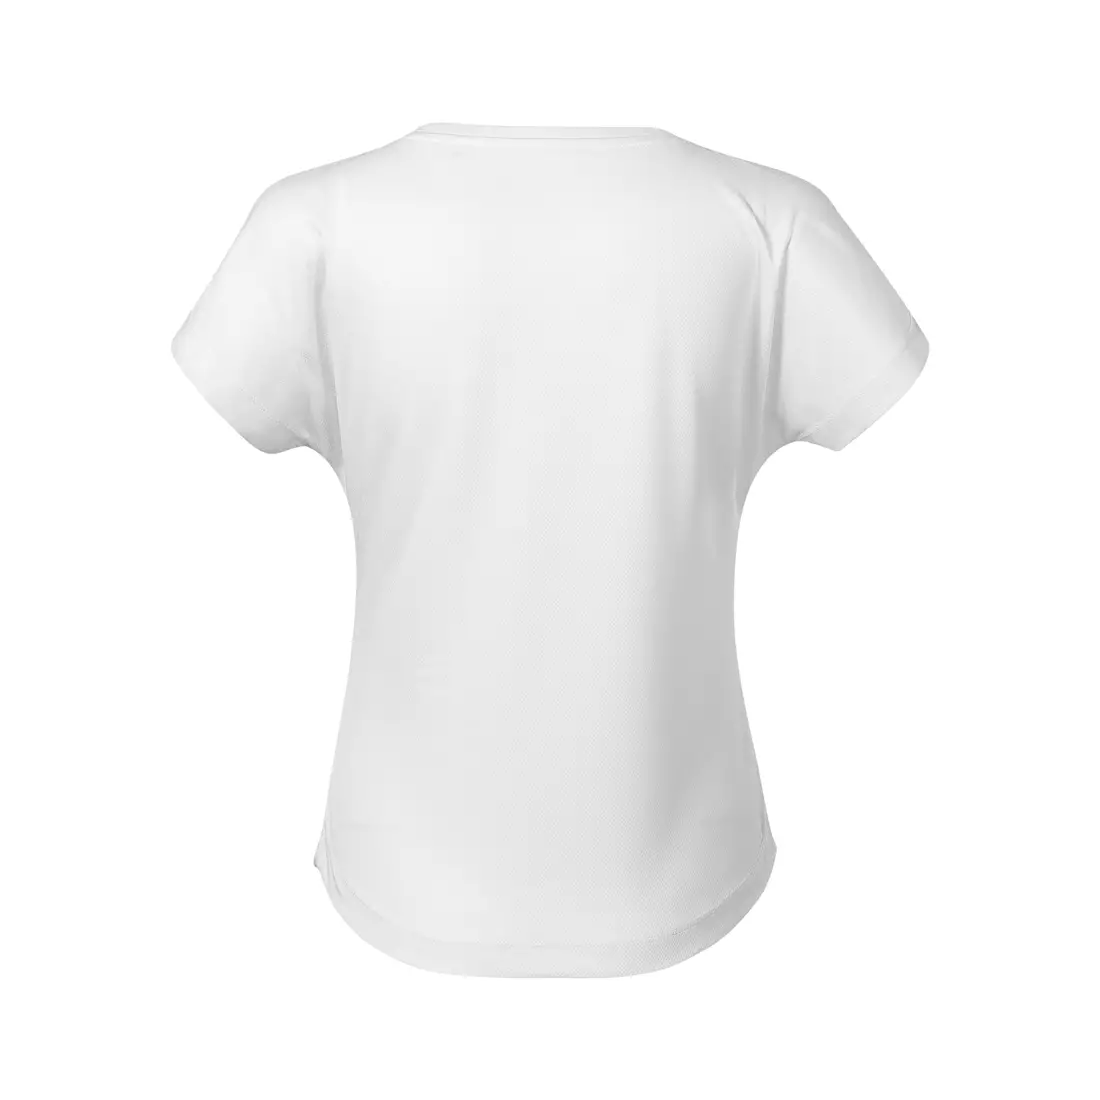 MALFINI Koszulka CHANCE GRS damska koszulka sportowa, krótki rękaw, micro poliester z recyklingu biały 8110012